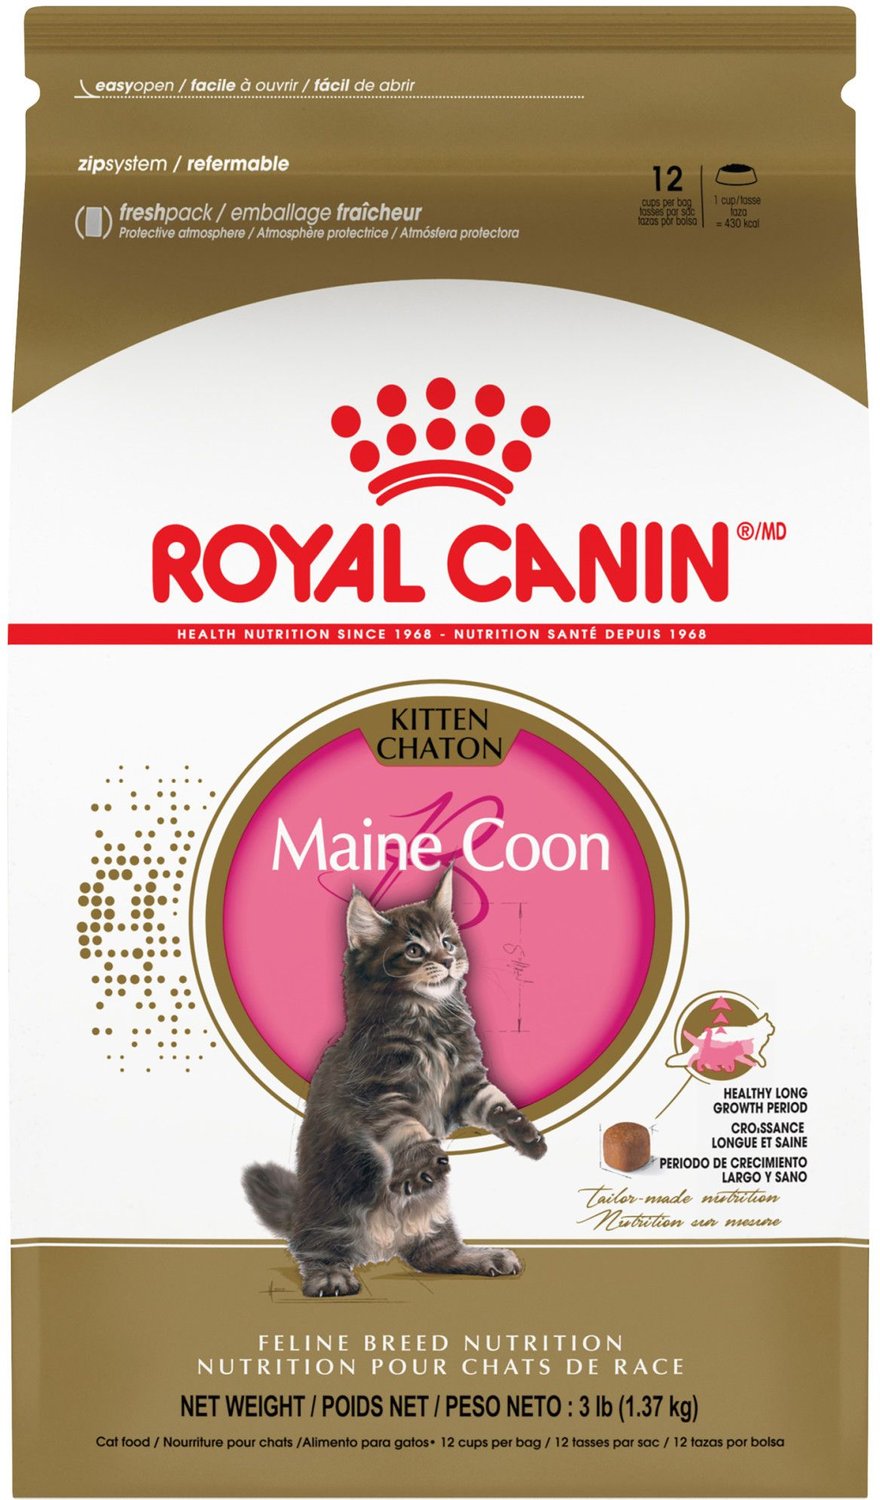 royal canin kitten 10